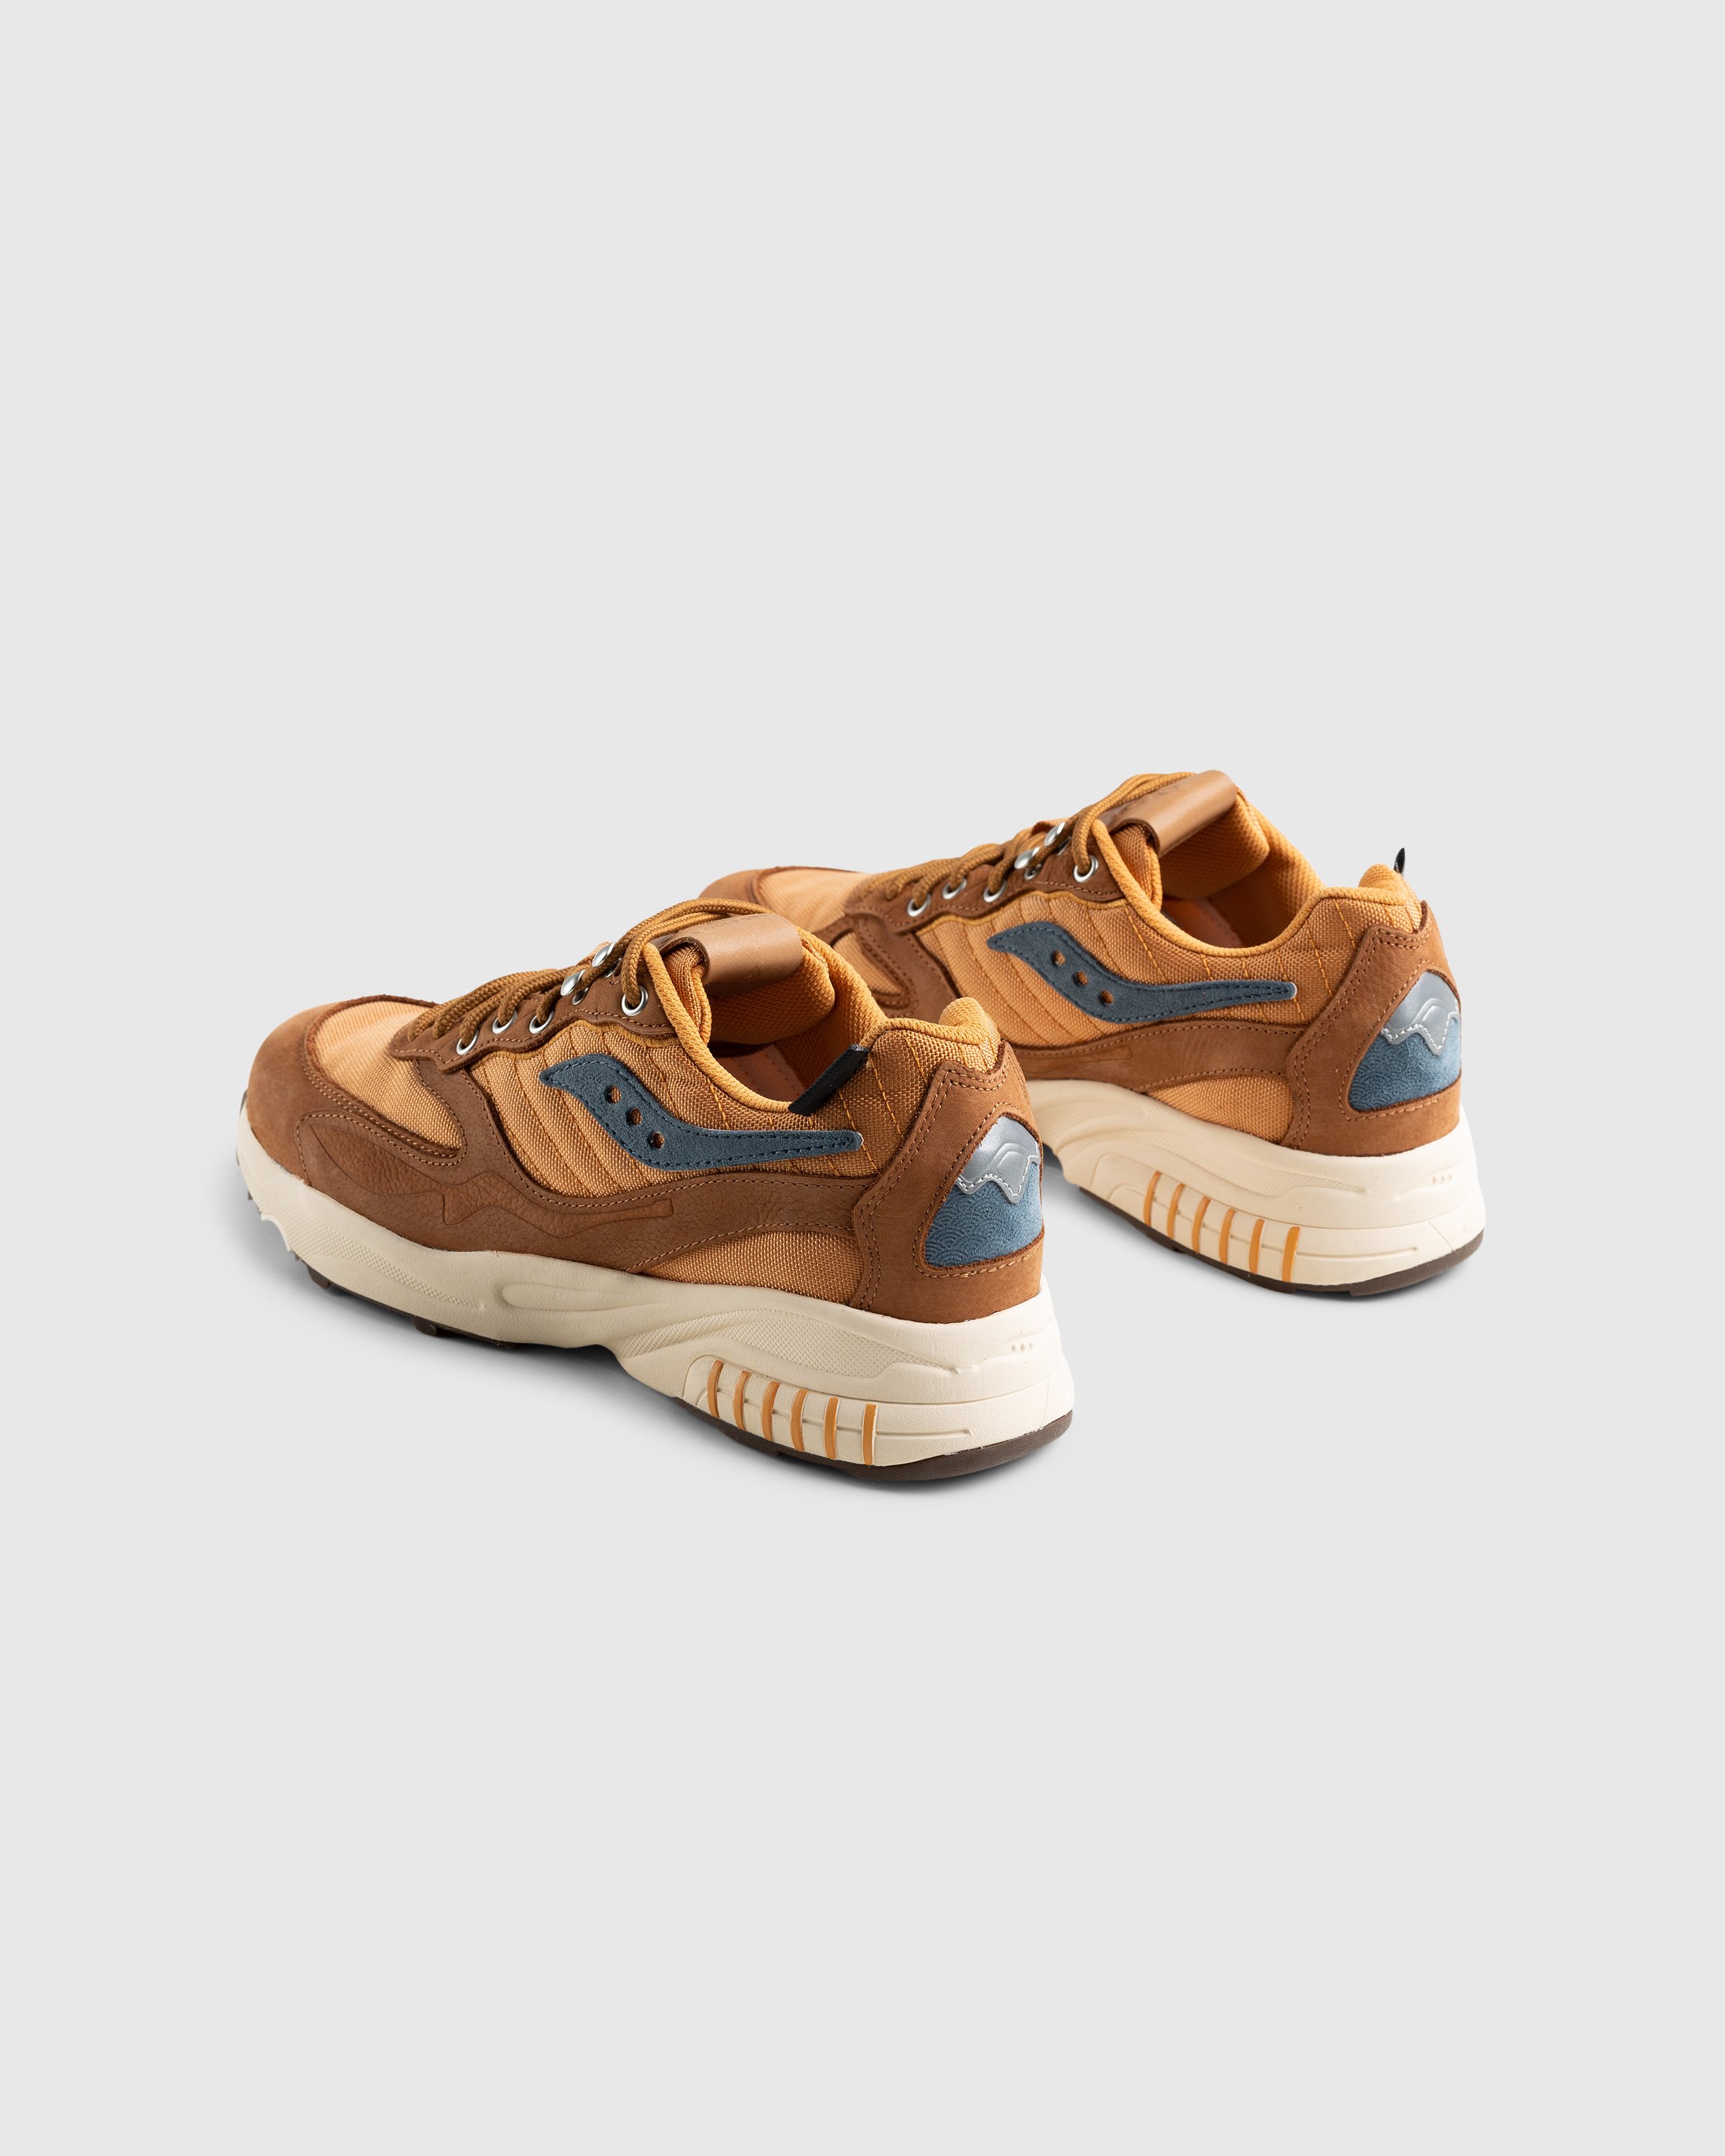 Saucony - 3D Grid Hurricane Brown/Rust - Footwear - Brown - Image 4